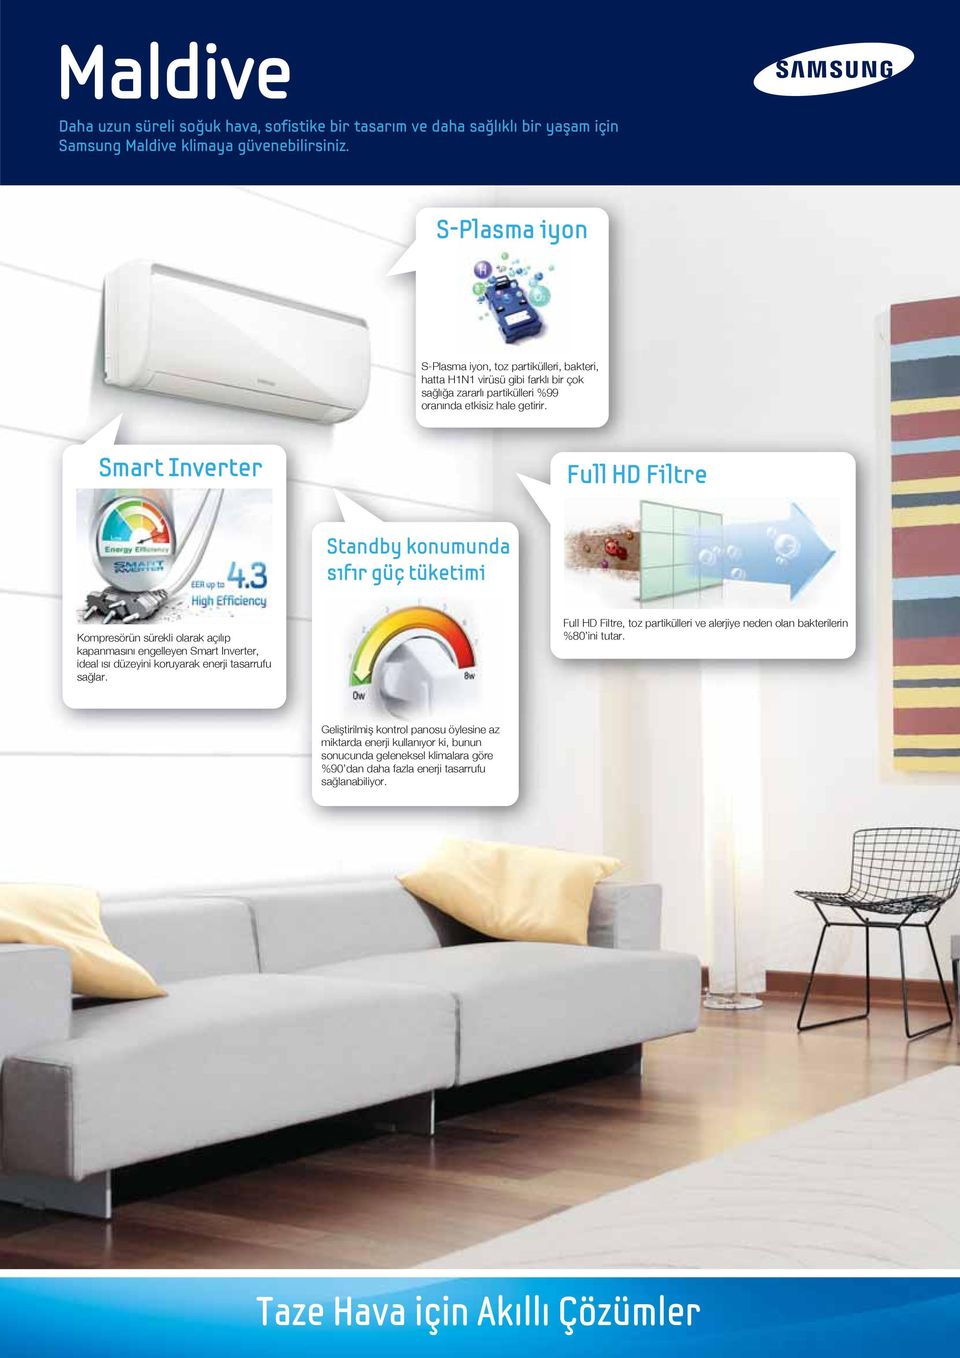 Smart Inverter Full HD Filtre Standby konumunda sıfır güç tüketimi Kompresörün sürekli olarak açılıp kapanmasını engelleyen Smart Inverter, ideal ısı düzeyini koruyarak enerji tasarrufu